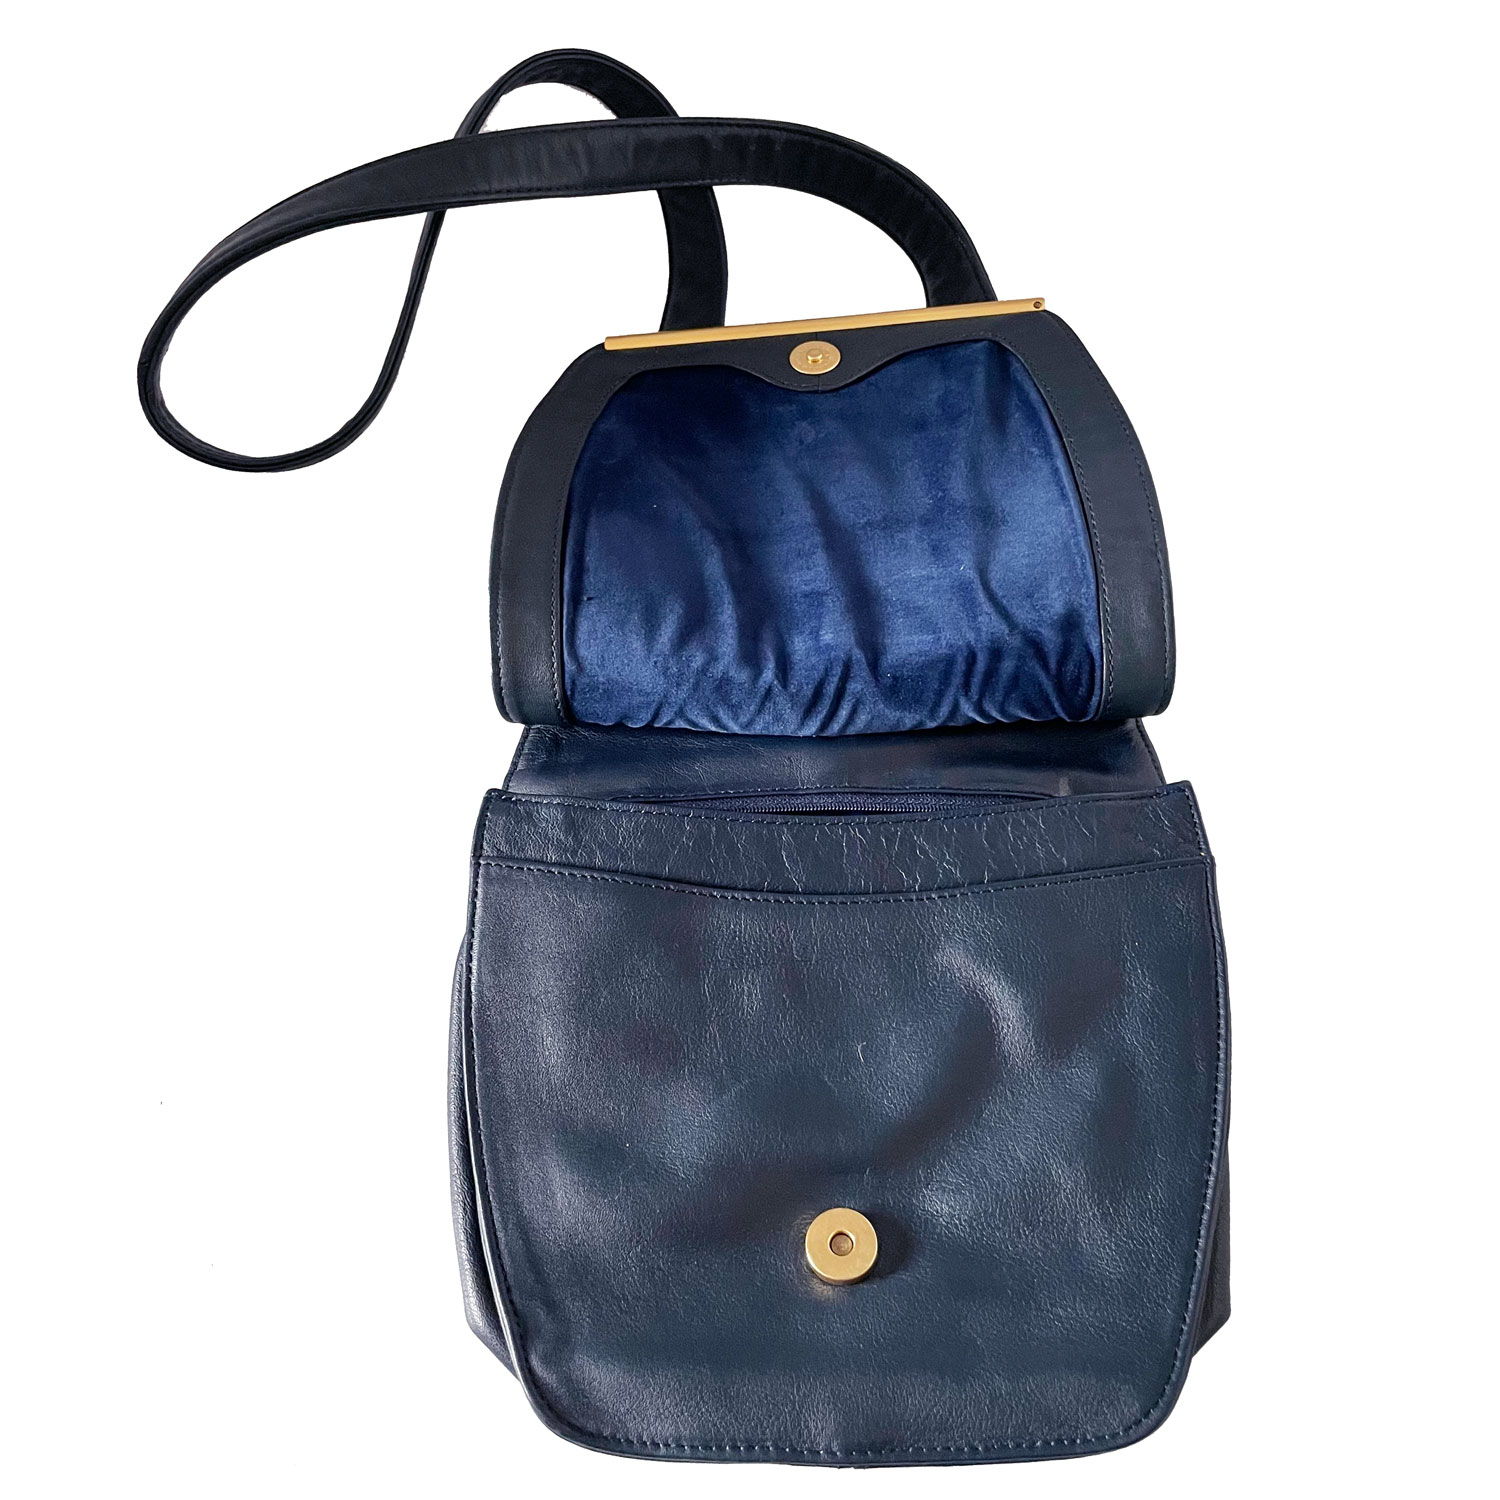 Brio leather purse